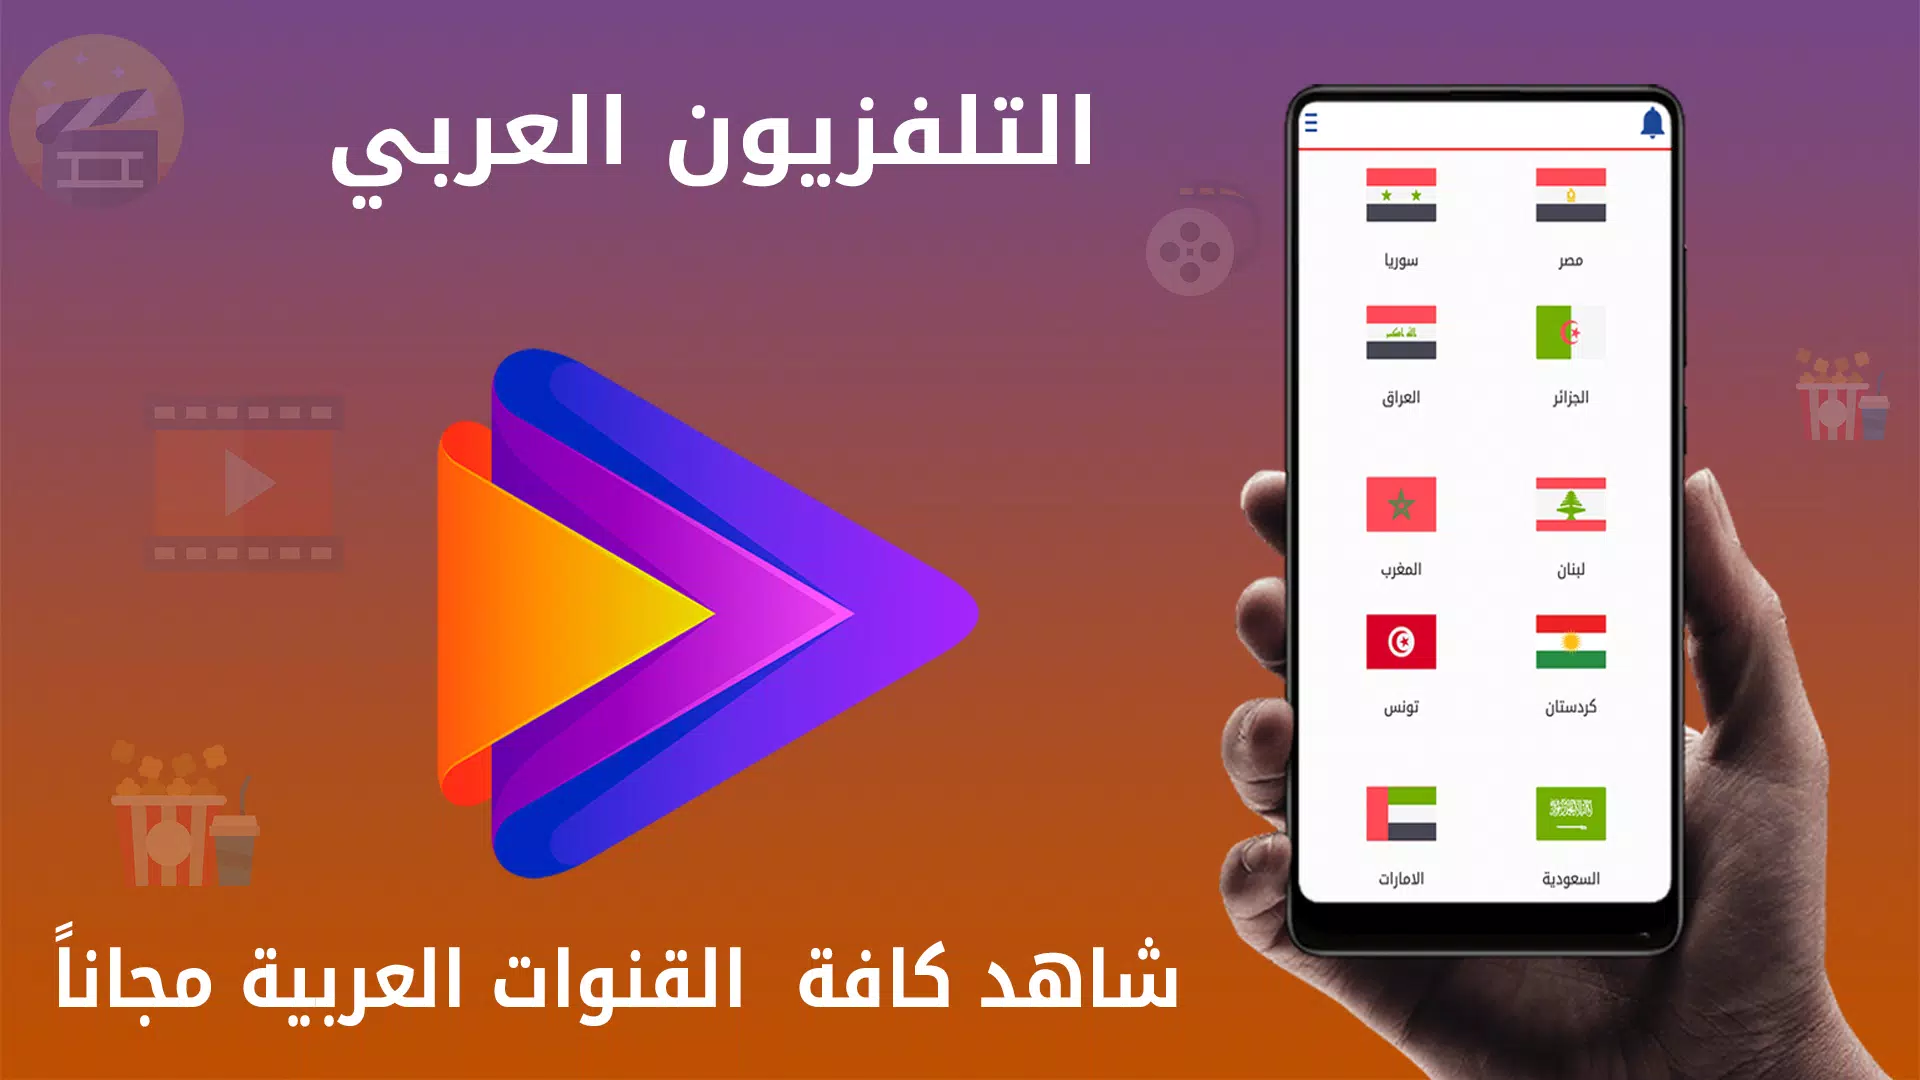 التلفزيون العربي APK for Android Download